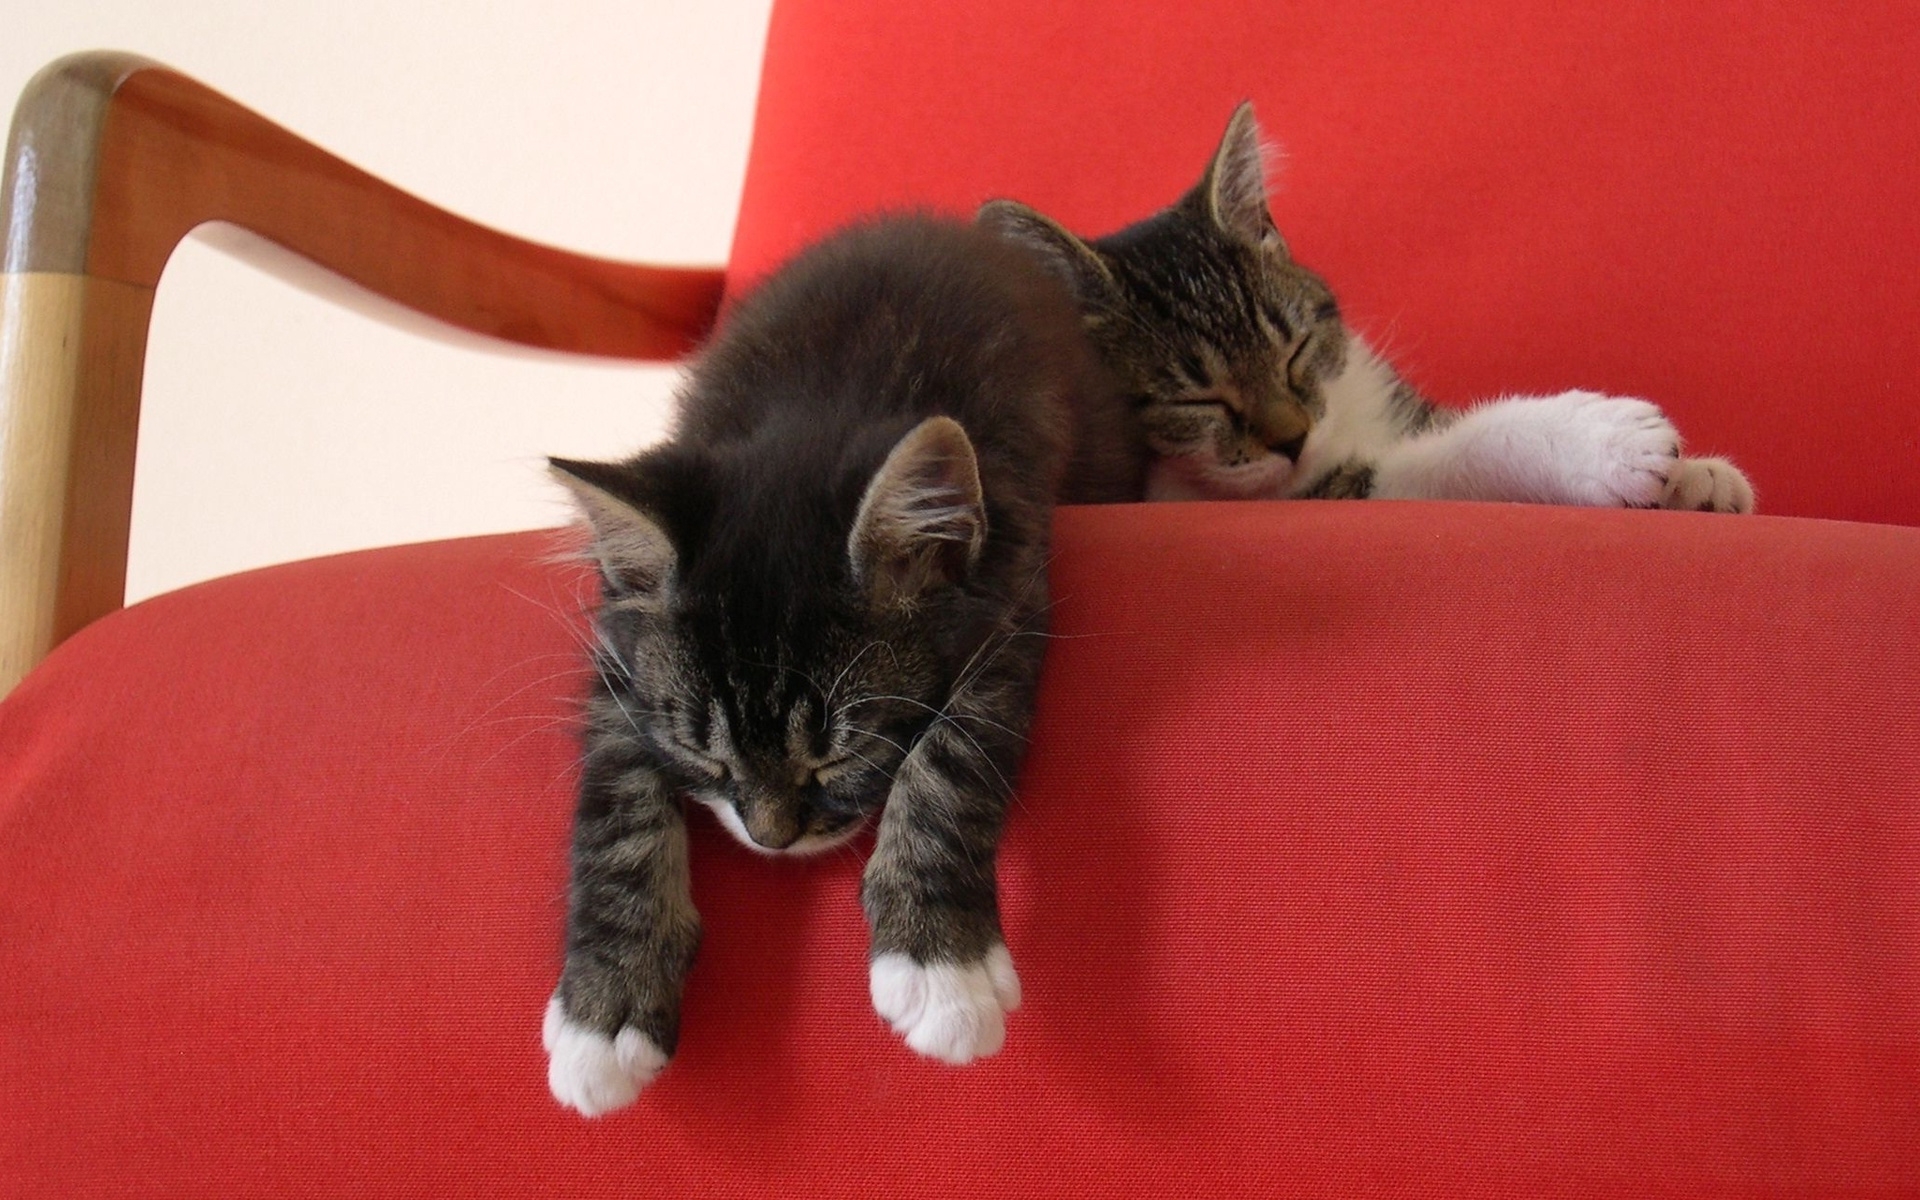 Скачать обои бесплатно Животные, Кошки (Коты Котики) картинка на рабочий стол ПК